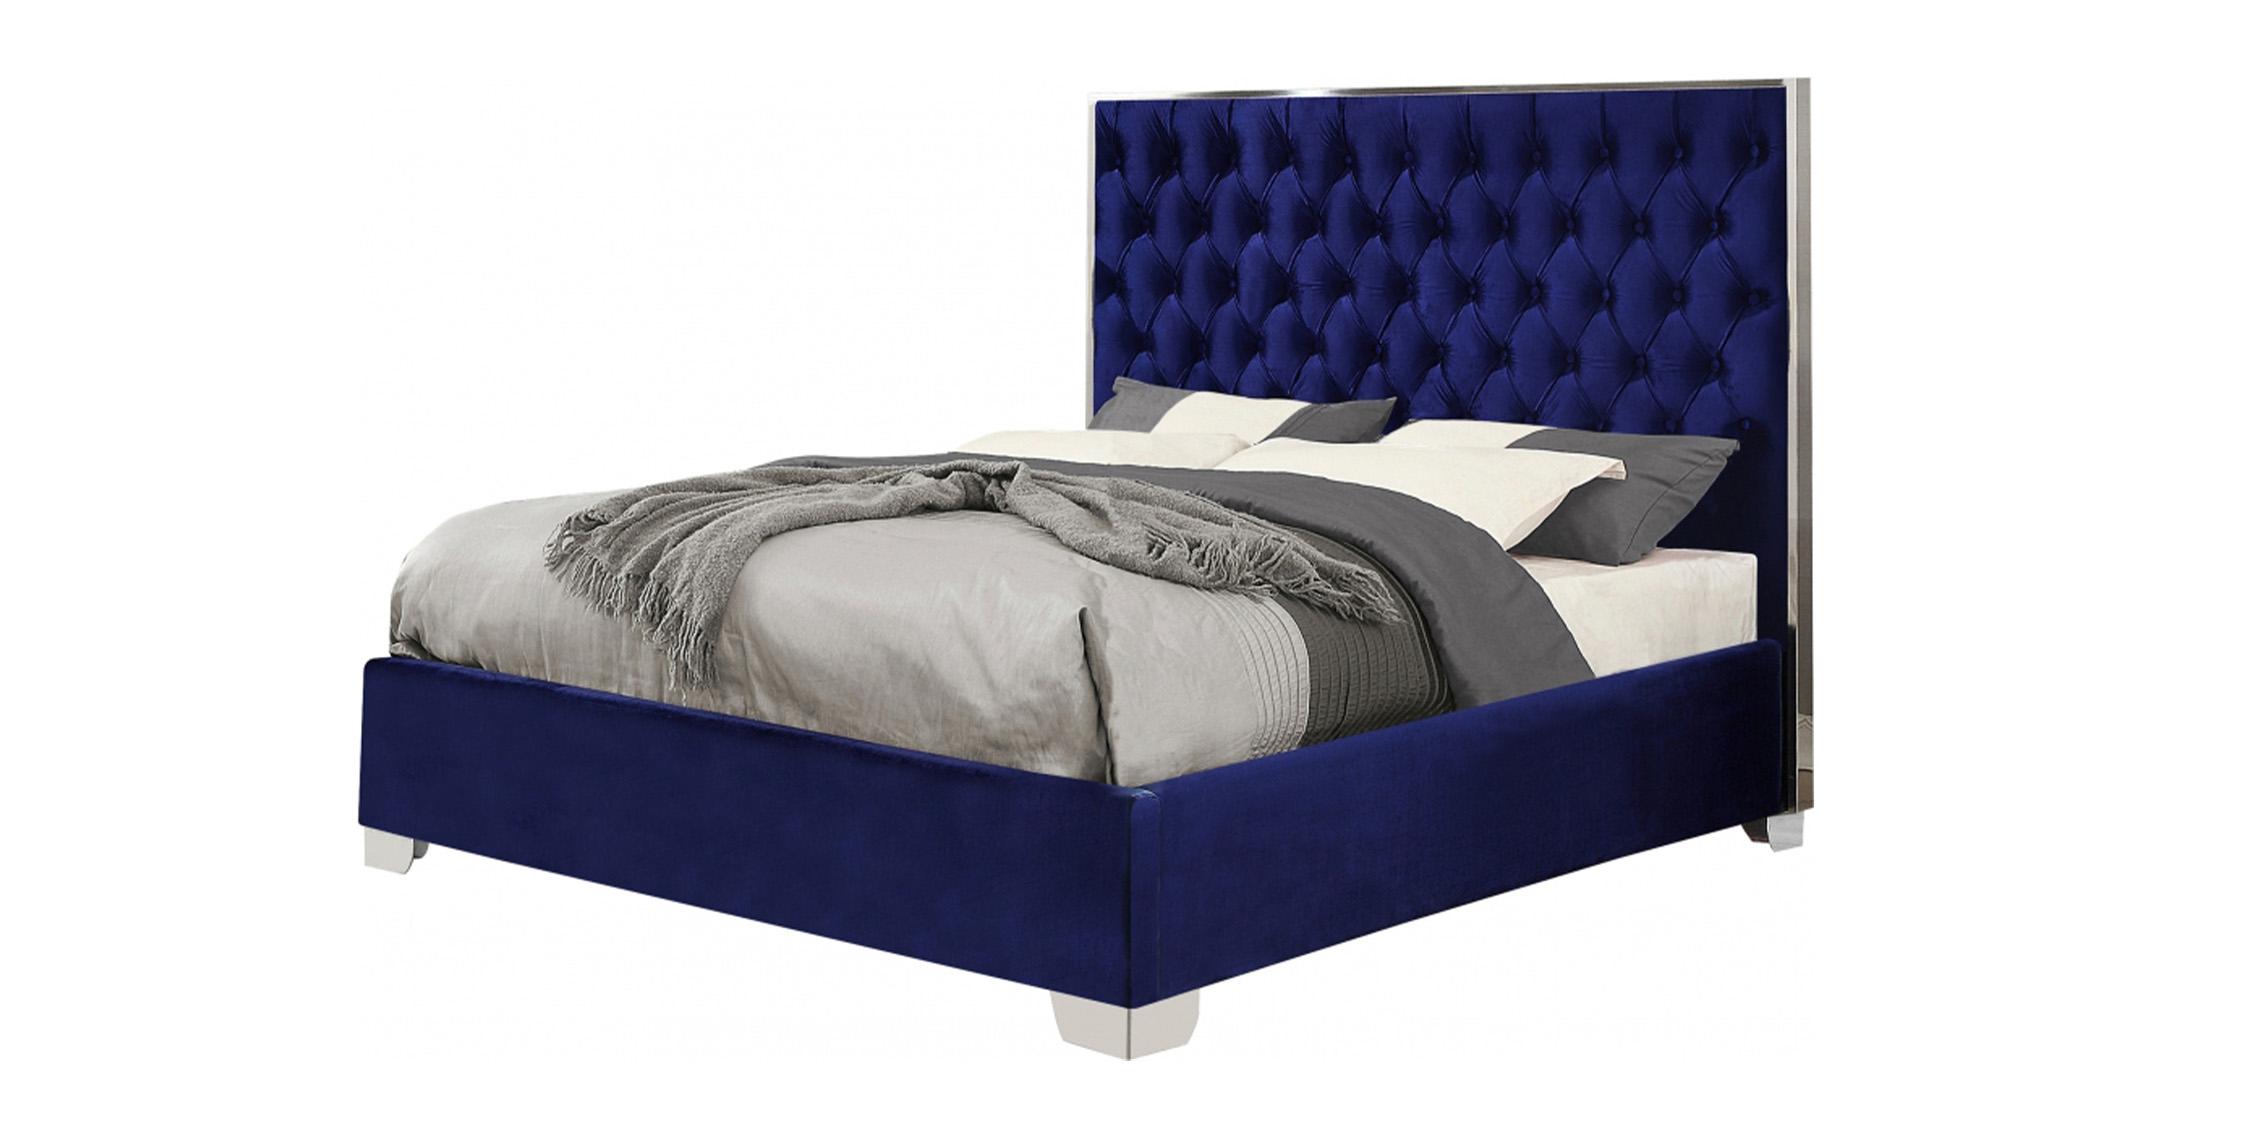 

    
Lexi Tufted Navy Blue Velvet Full Platform Bed Meridian Contemporary Modern
